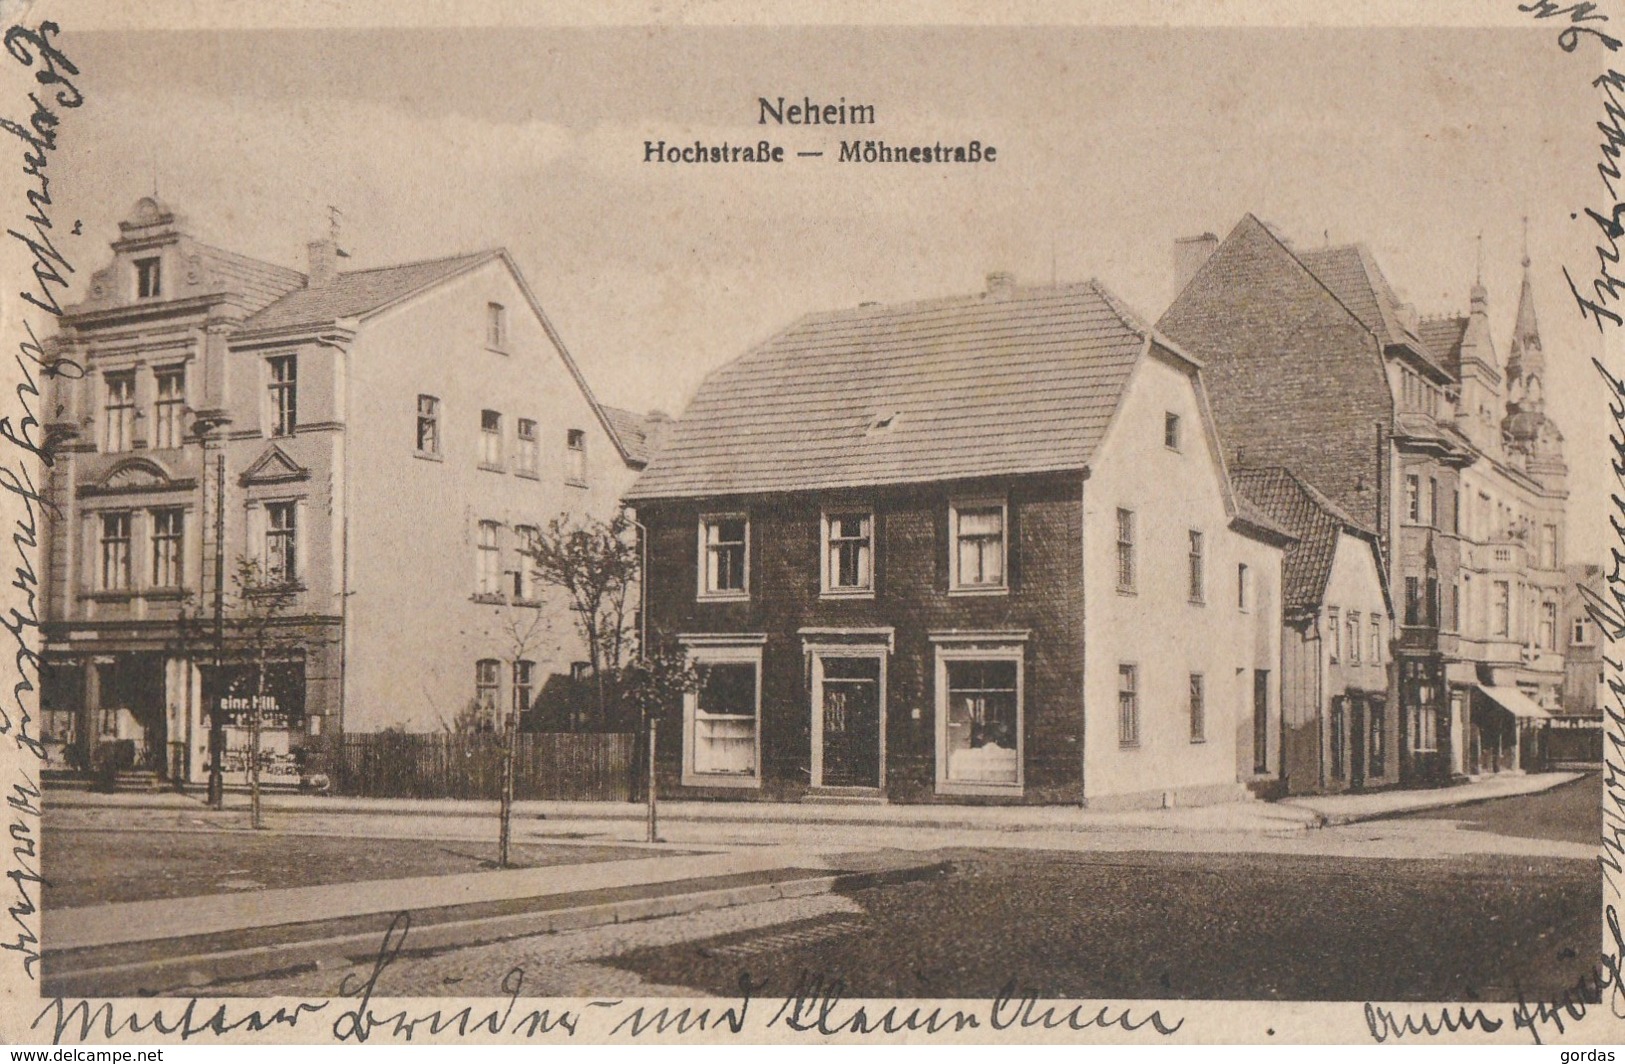 Germany - Neheim - Hochstrasse - Mohnestrasse - Arnsberg